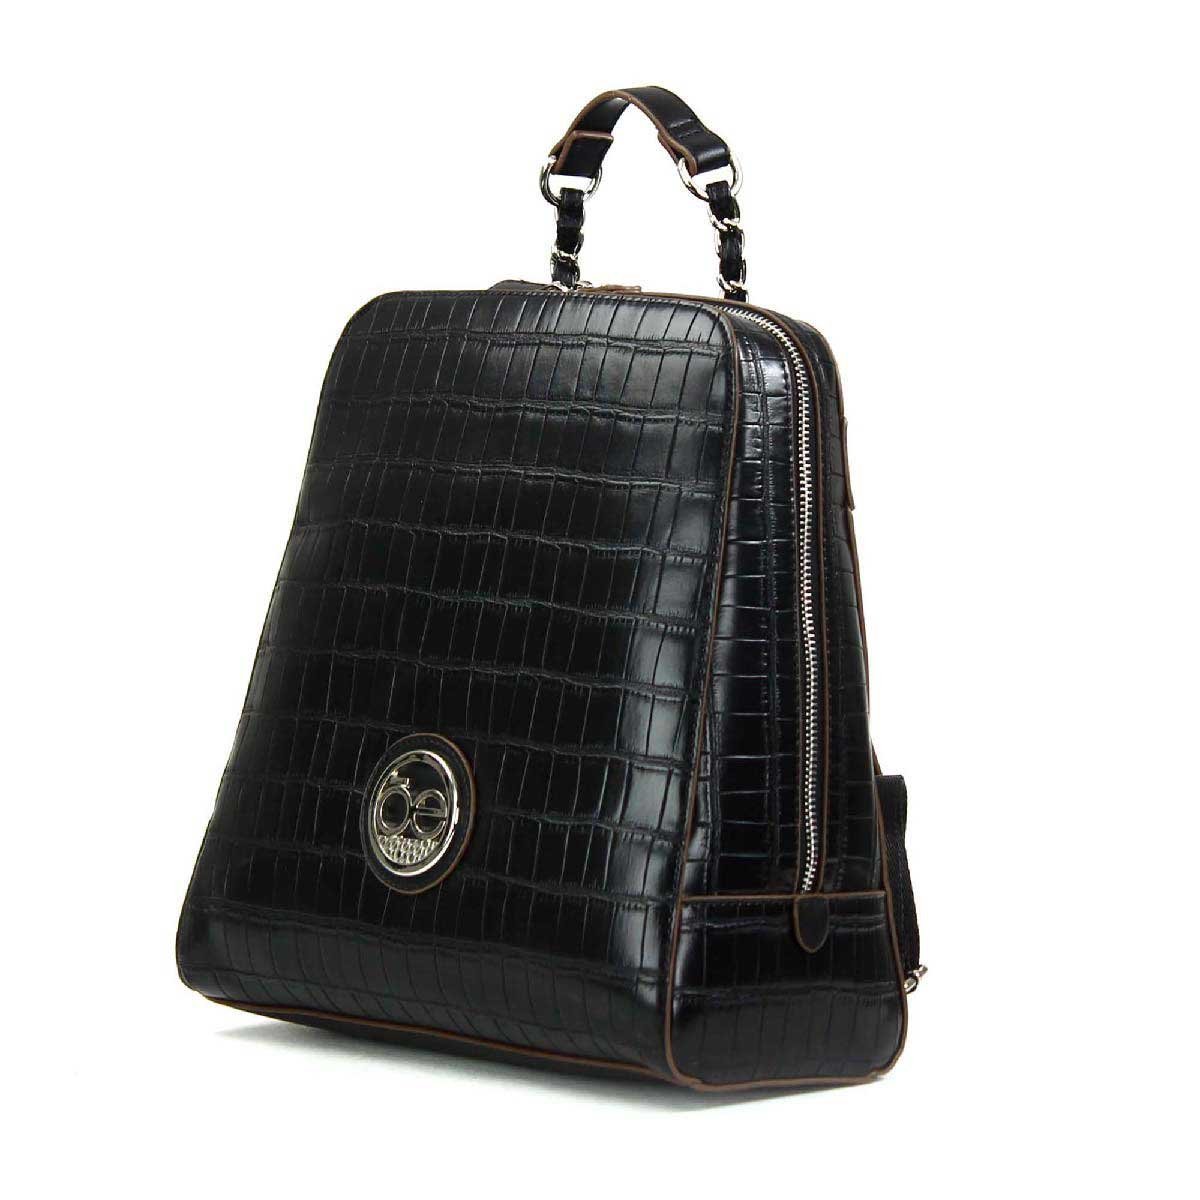 Backpack Negra en Material con Textura de Cocodrilo Cloe